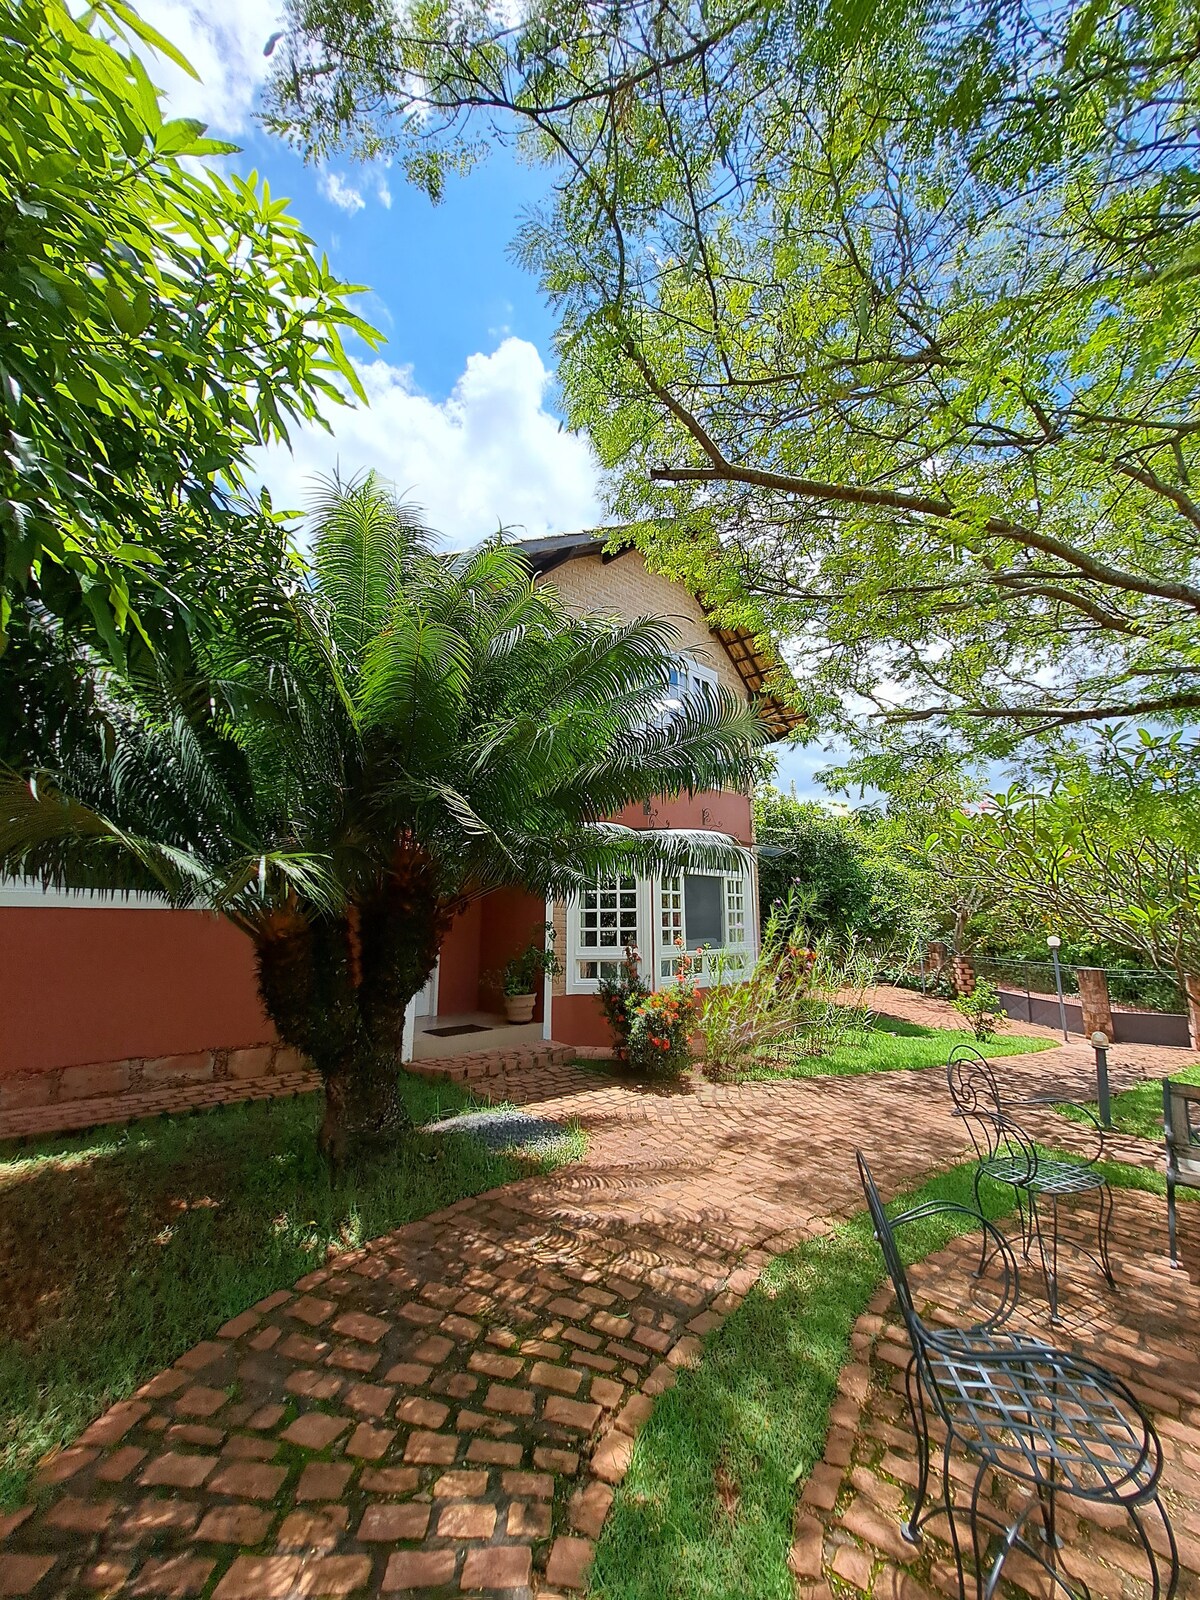 Casa em Lençóis-Chapada Diamantina-Bahia